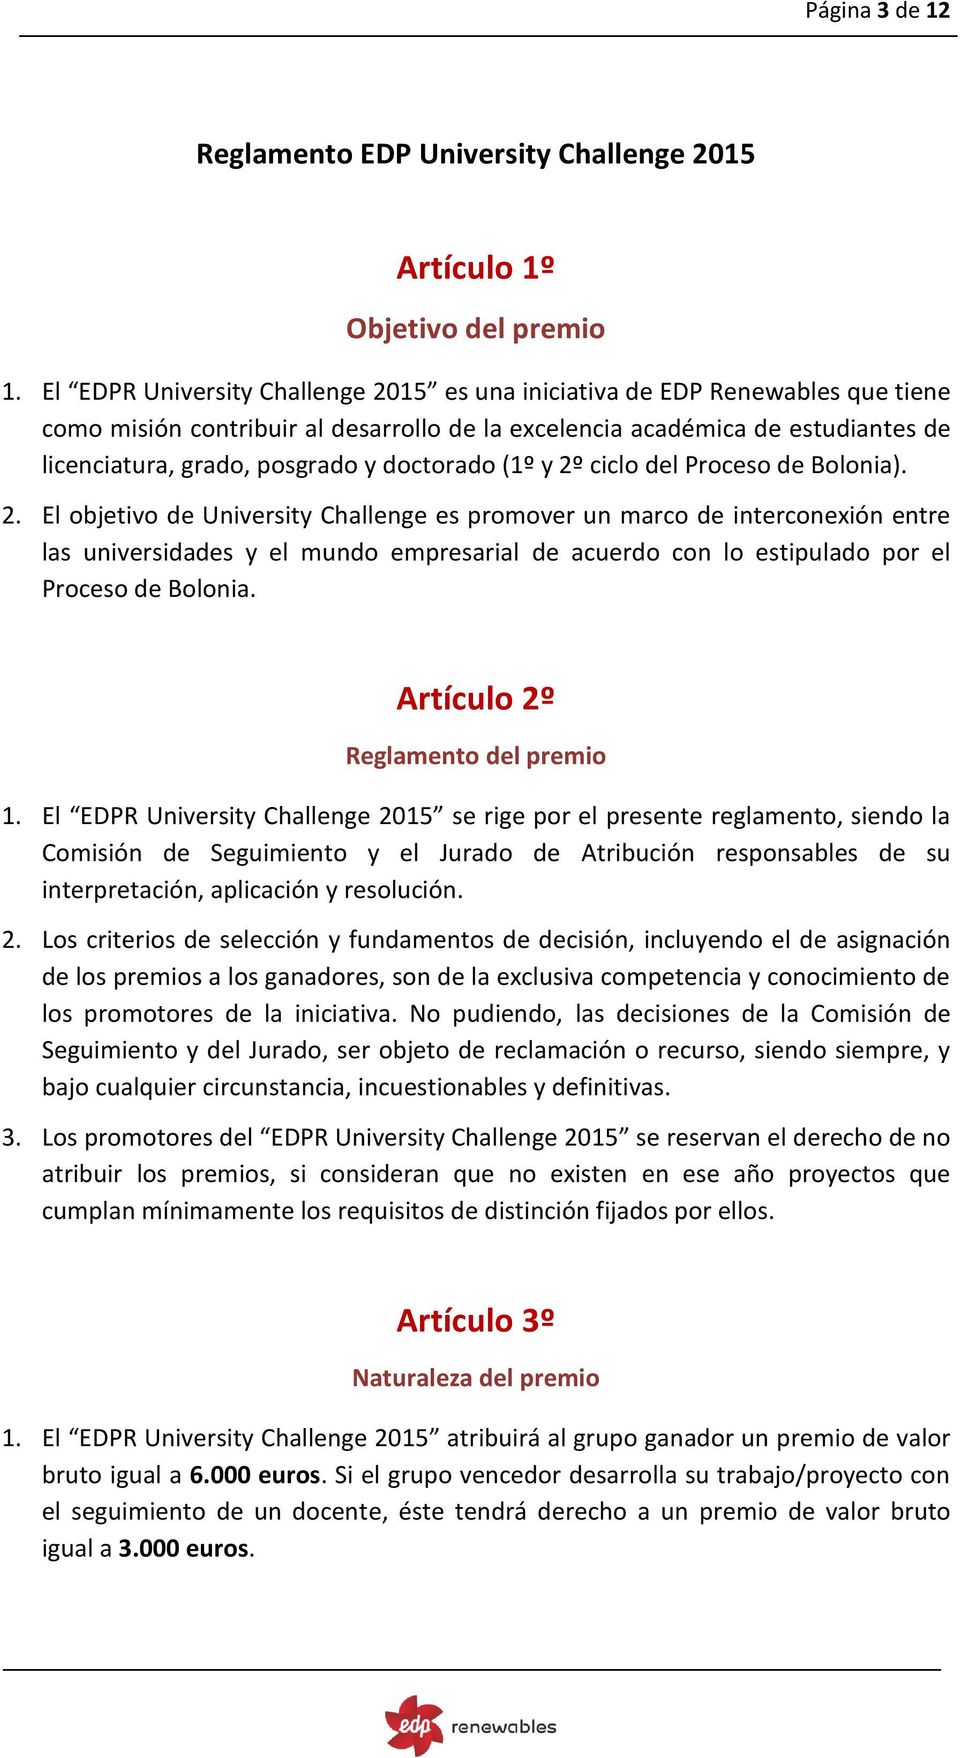 doctorado (1º y 2º ciclo del Proceso de Bolonia). 2. El objetivo de University Challenge es promover un marco de interconexión entre las universidades y el mundo empresarial de acuerdo con lo estipulado por el Proceso de Bolonia.